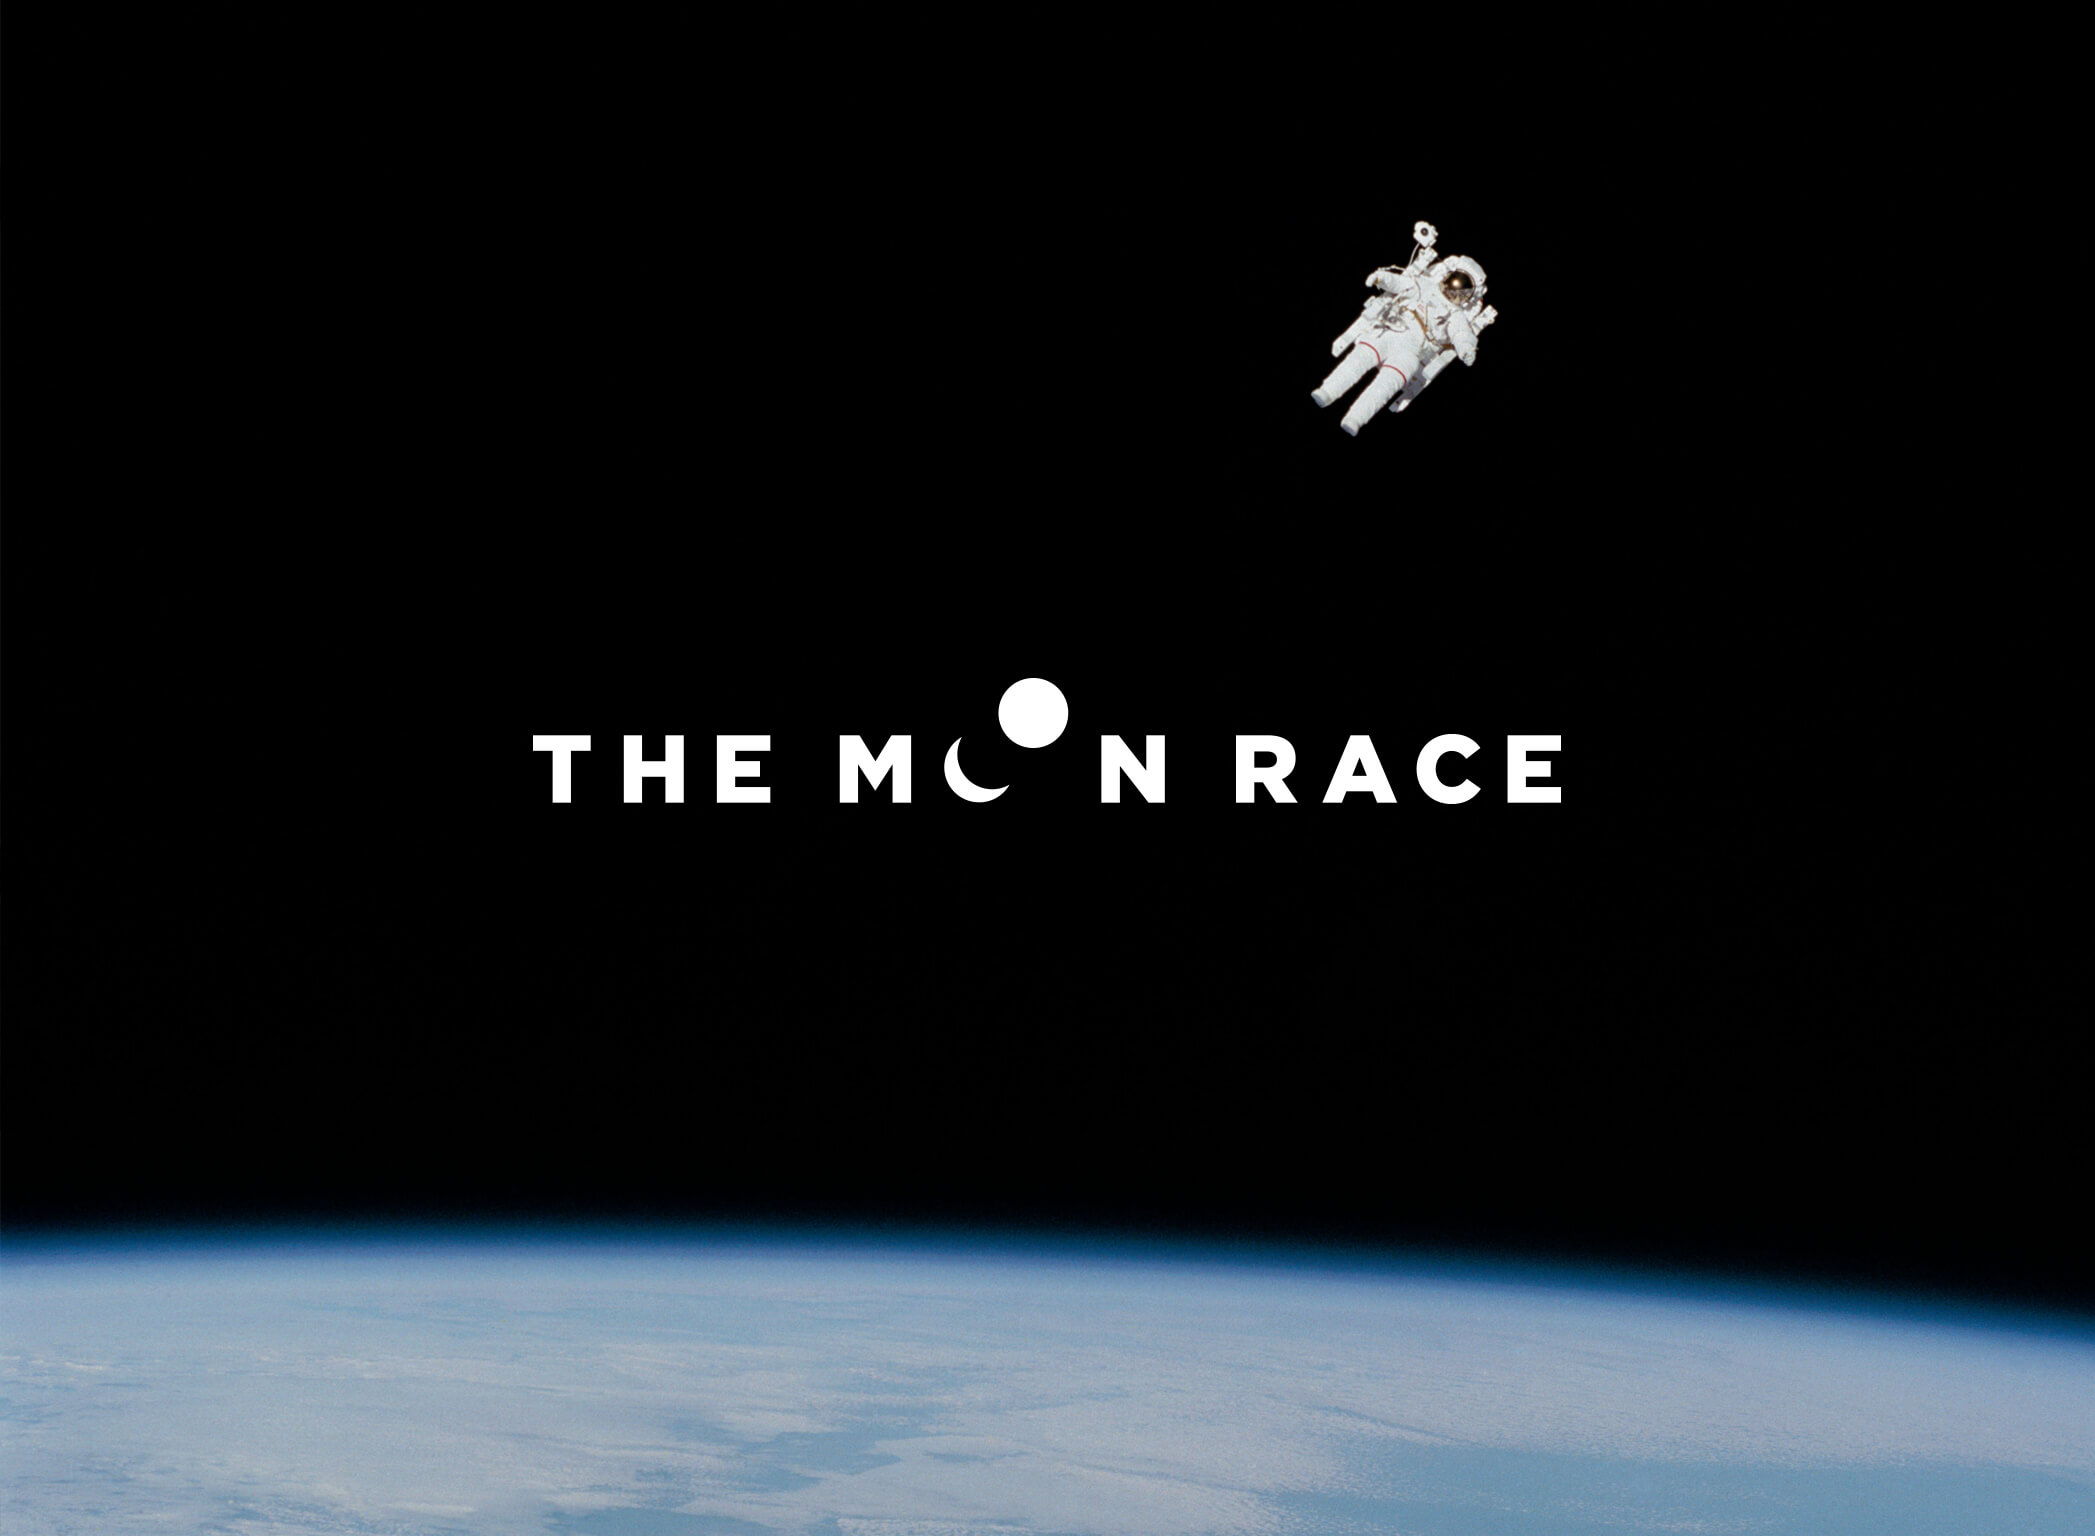 The Moon Race